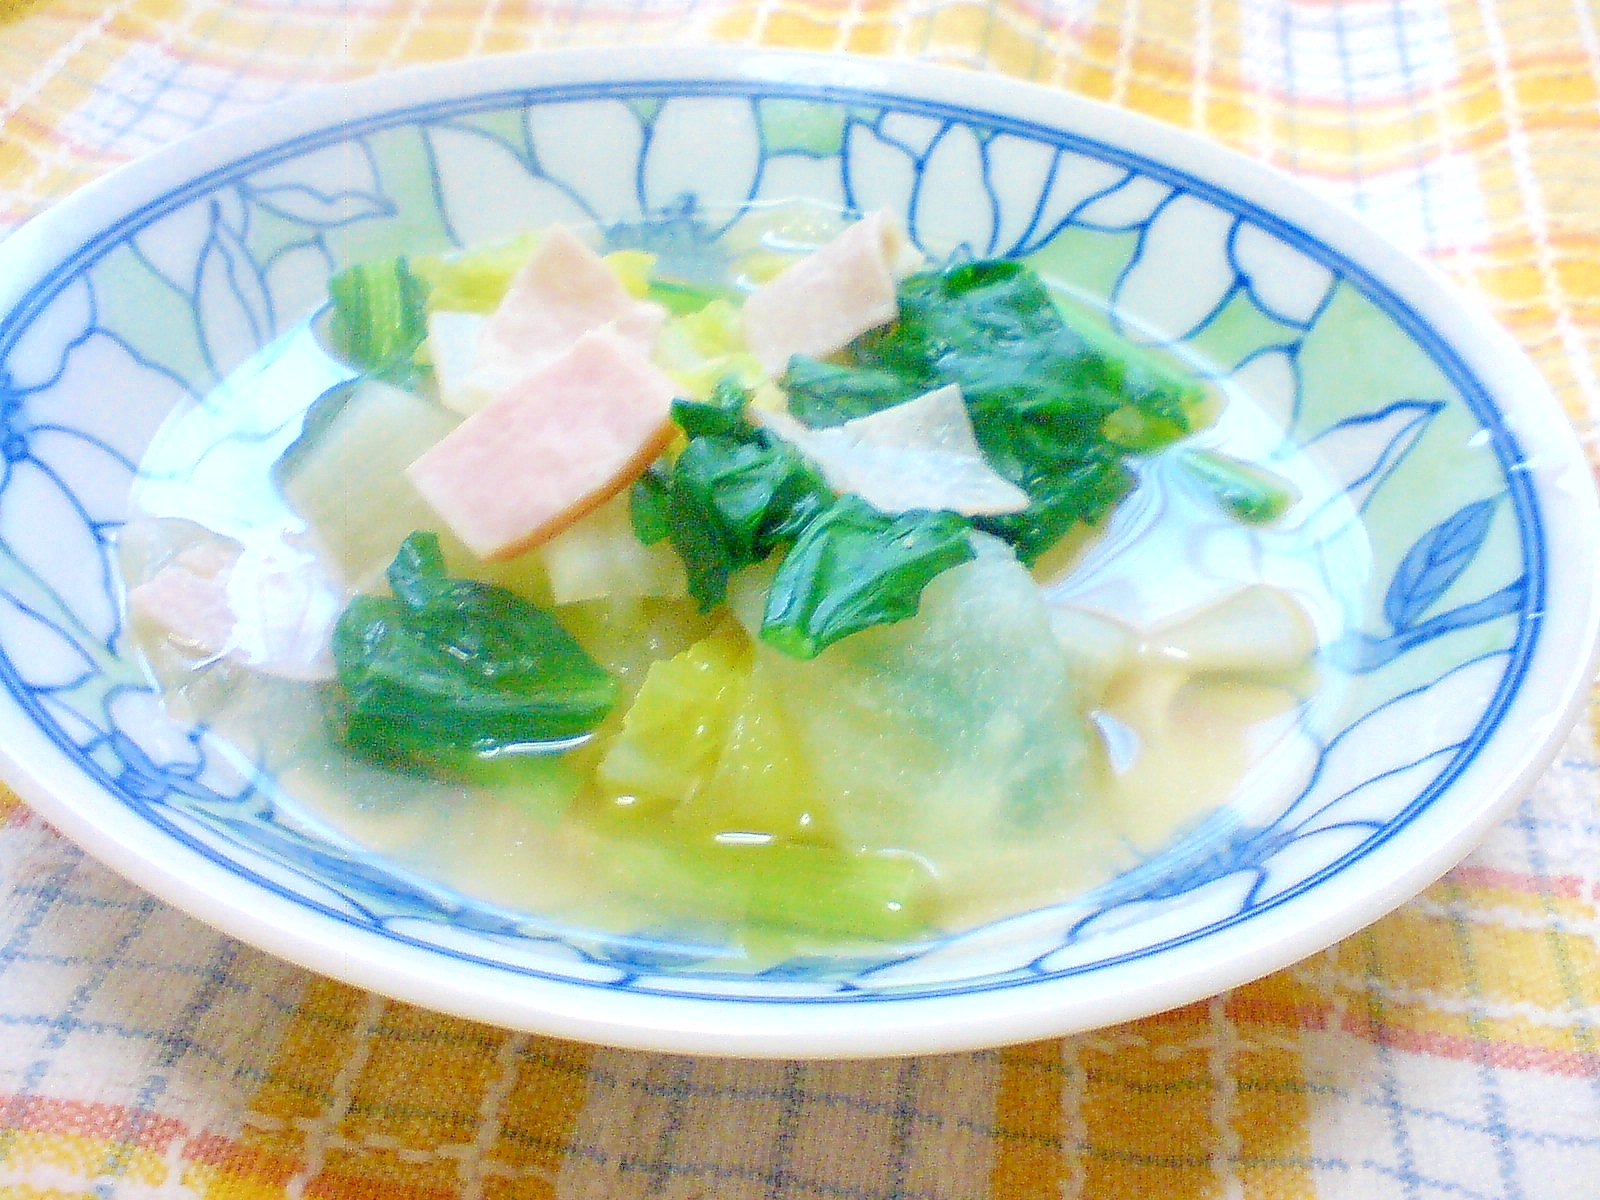 かぶと小松菜のスープ